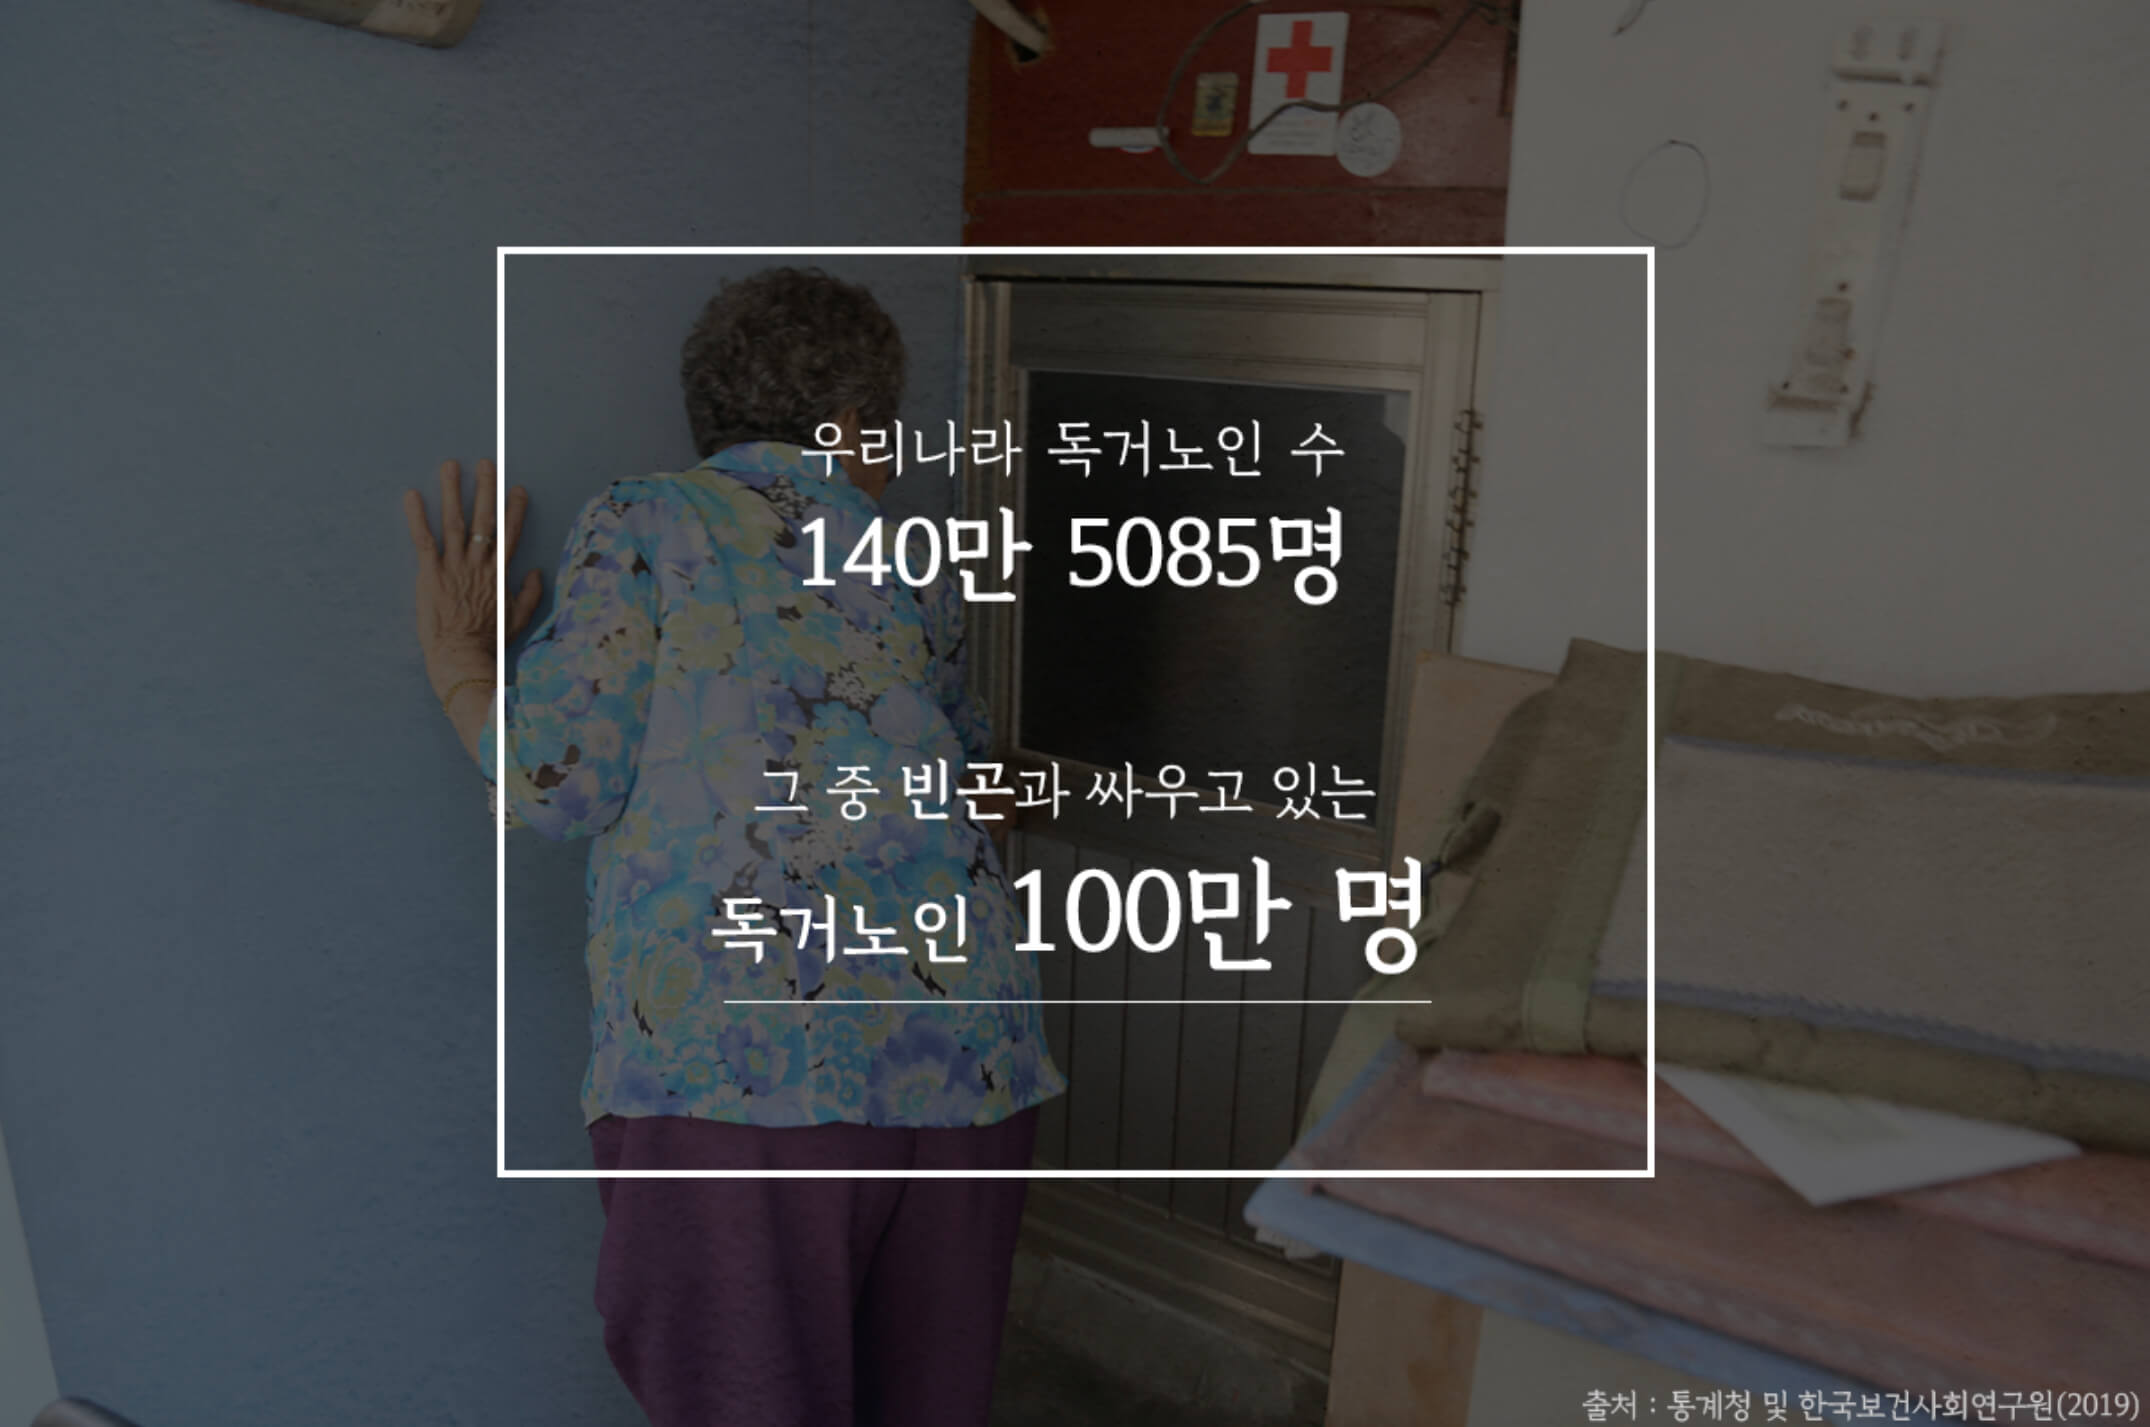 대한민국 독거노인 140만명 주식은 라면